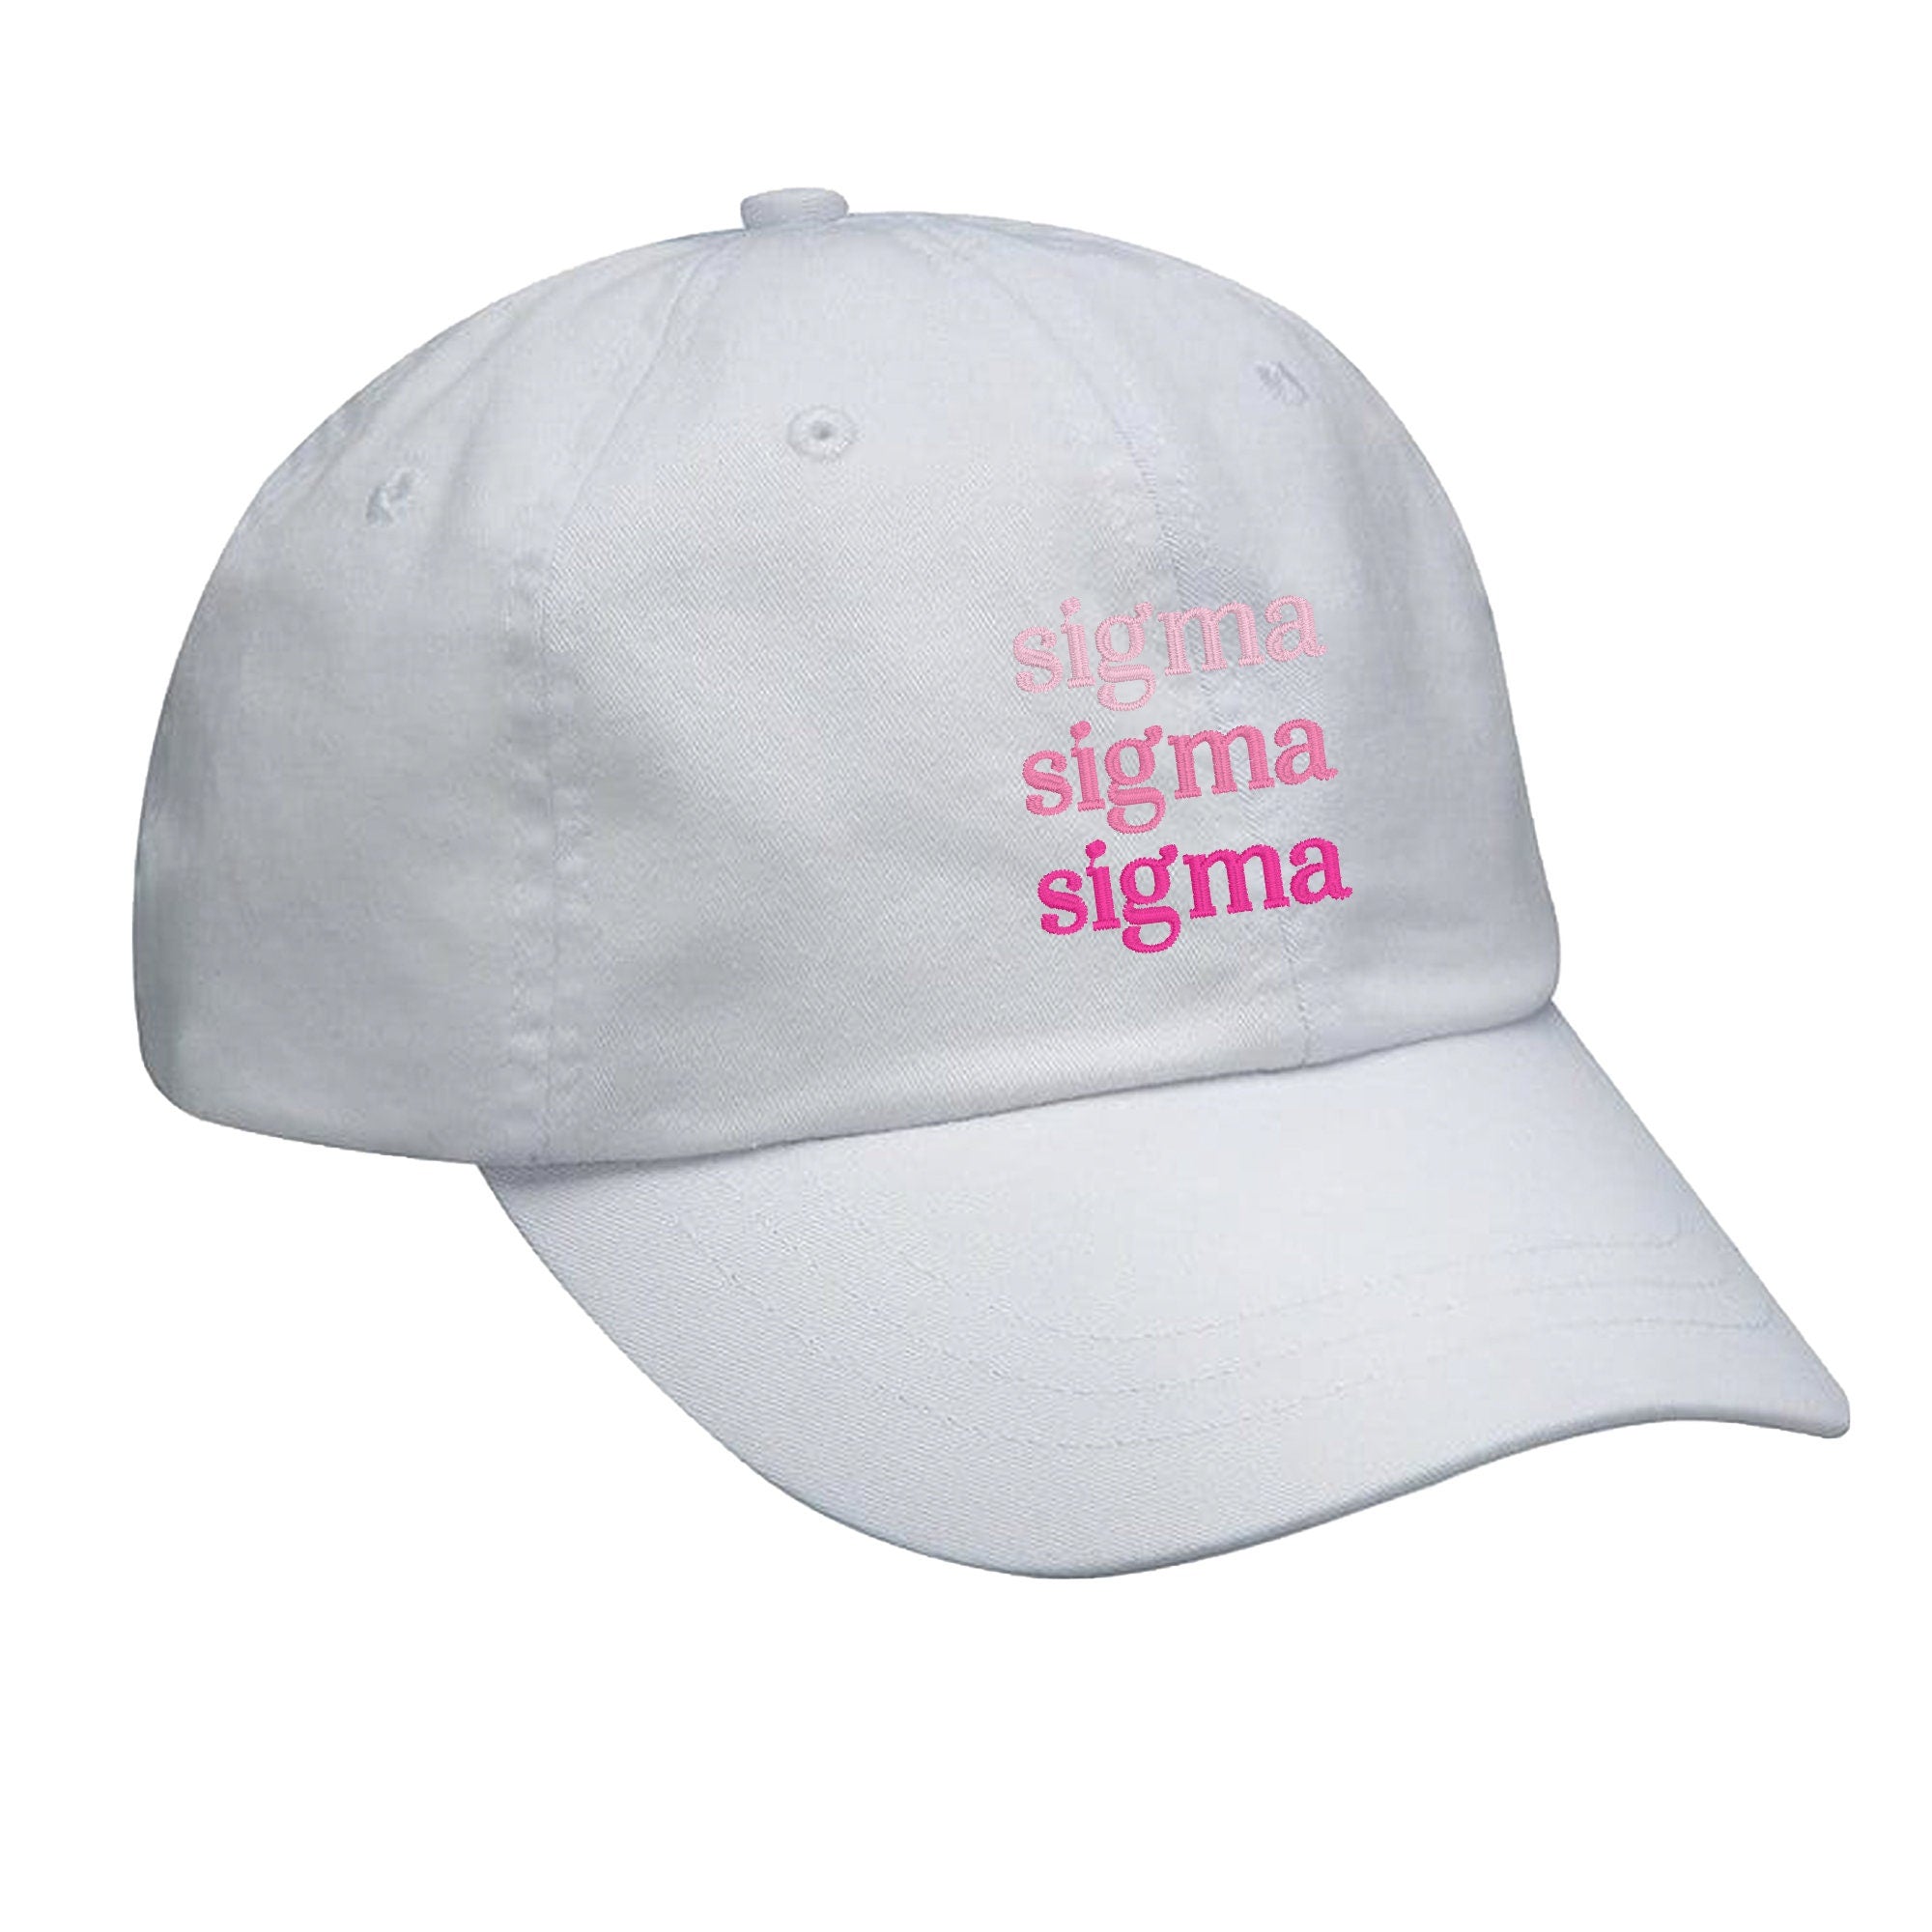 Sigma Sigma Sigma Hat - Pink Gradient - Go Greek Chic